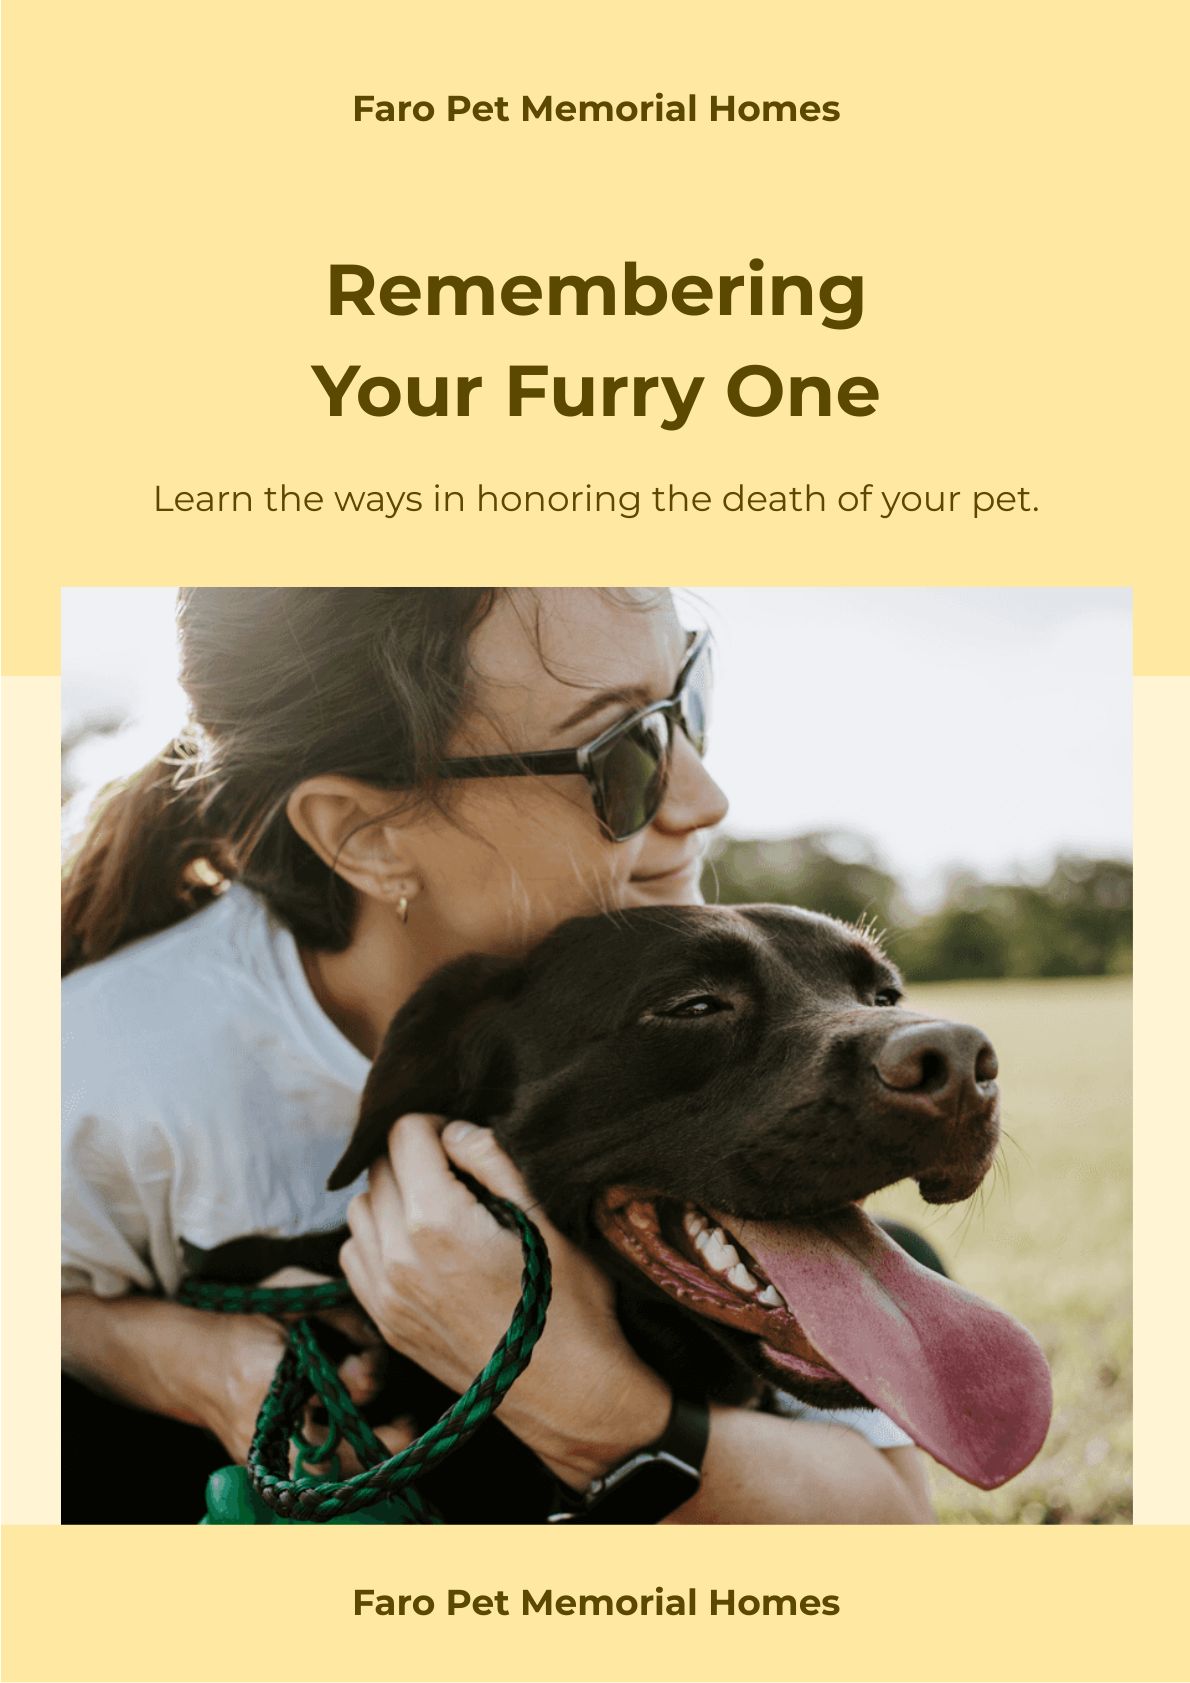 Free Pet Memorial Photo Magnet Template